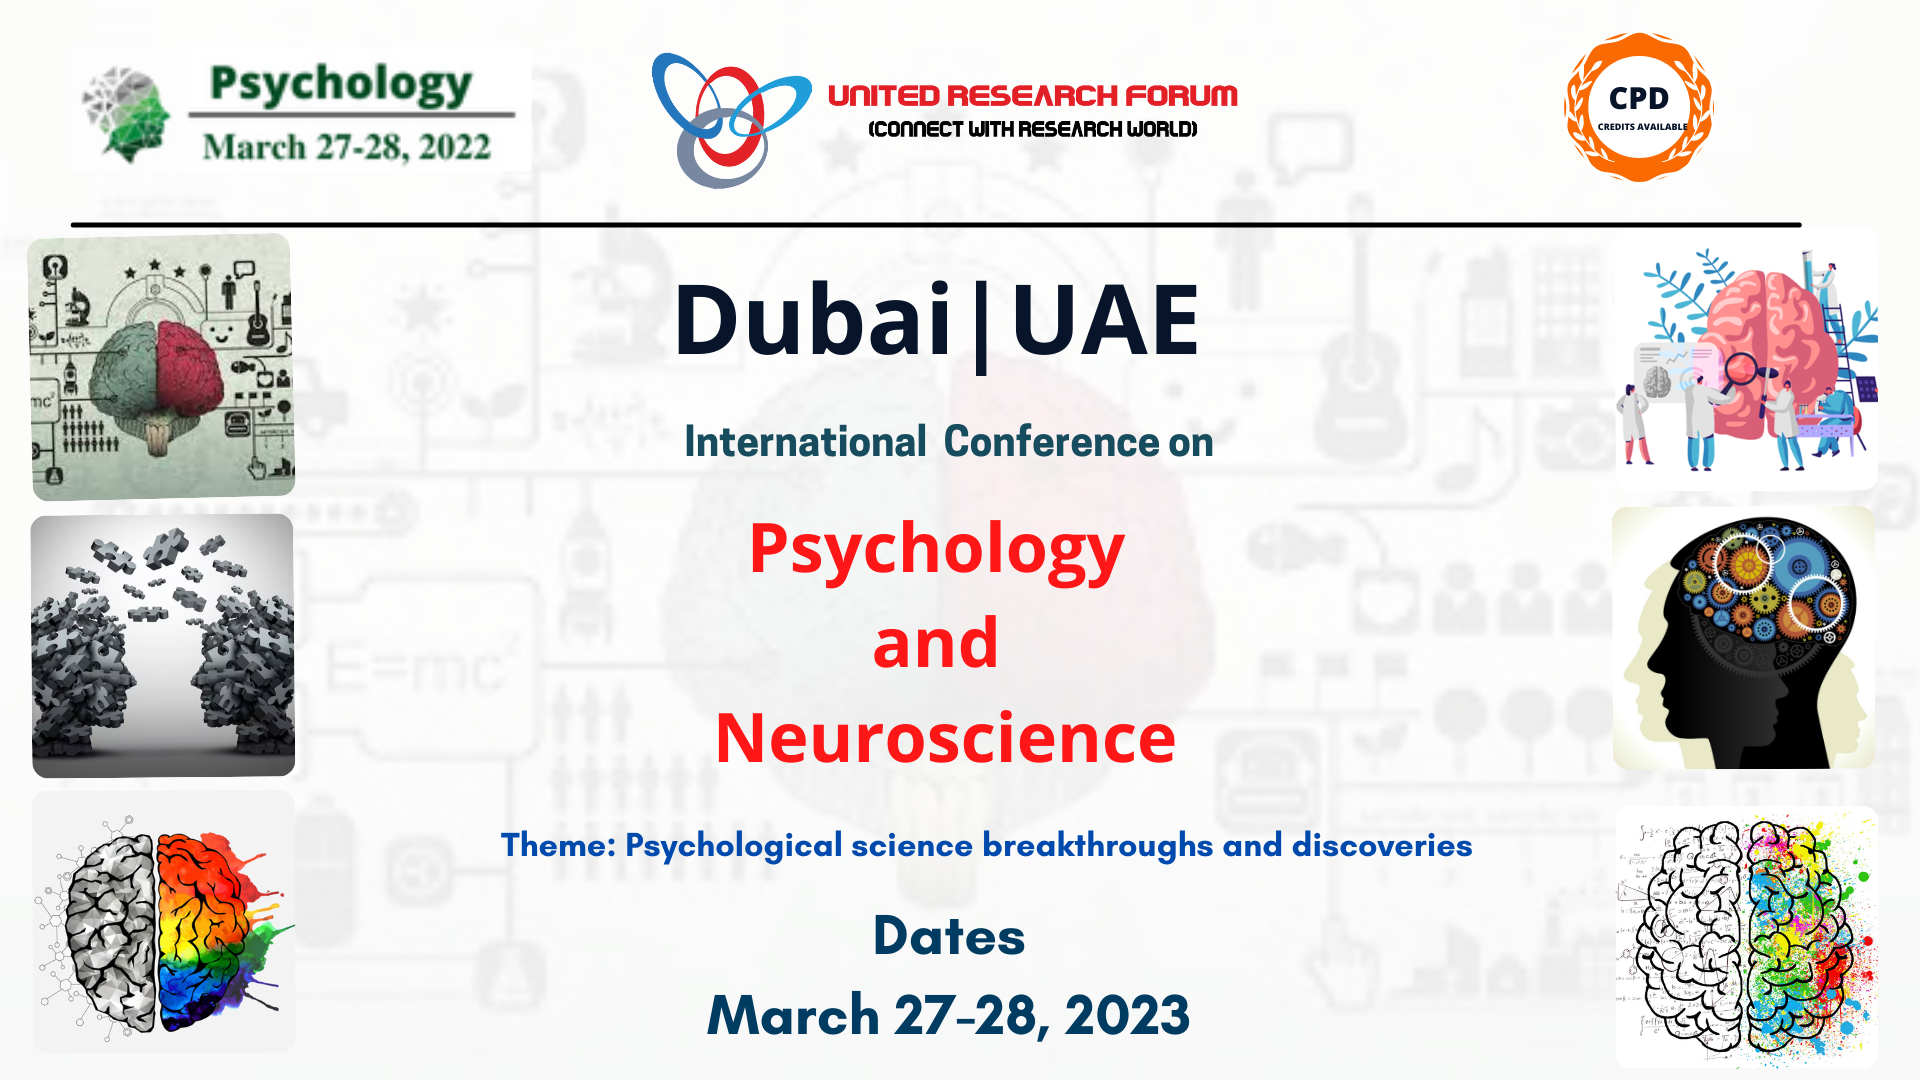 International Conference on Psychology and Neuroscience, Dubai, Abu Dhabi, United Arab Emirates